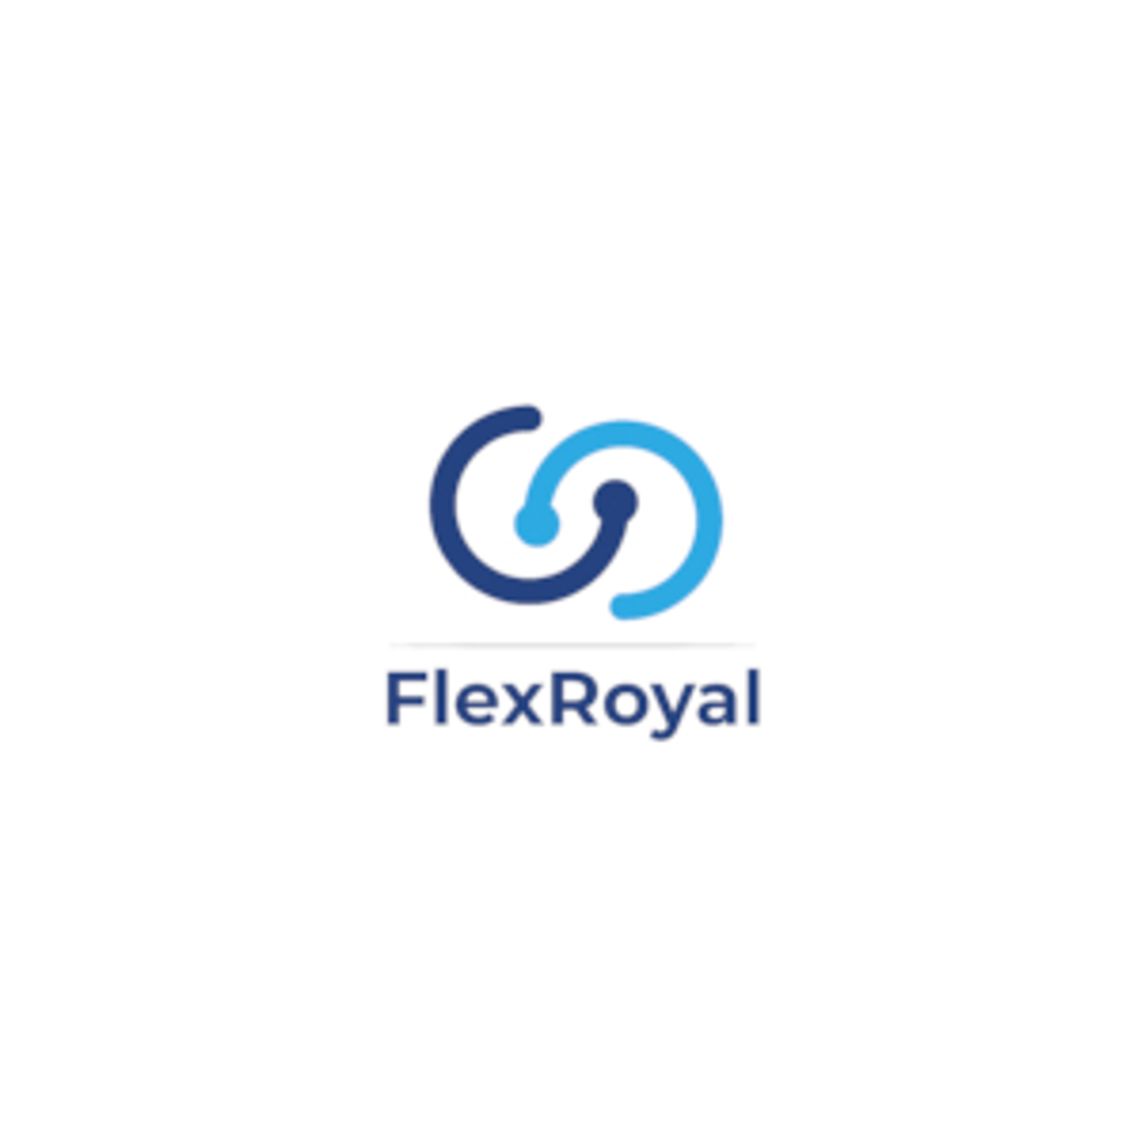 Praca w Holandii - FlexRoyal